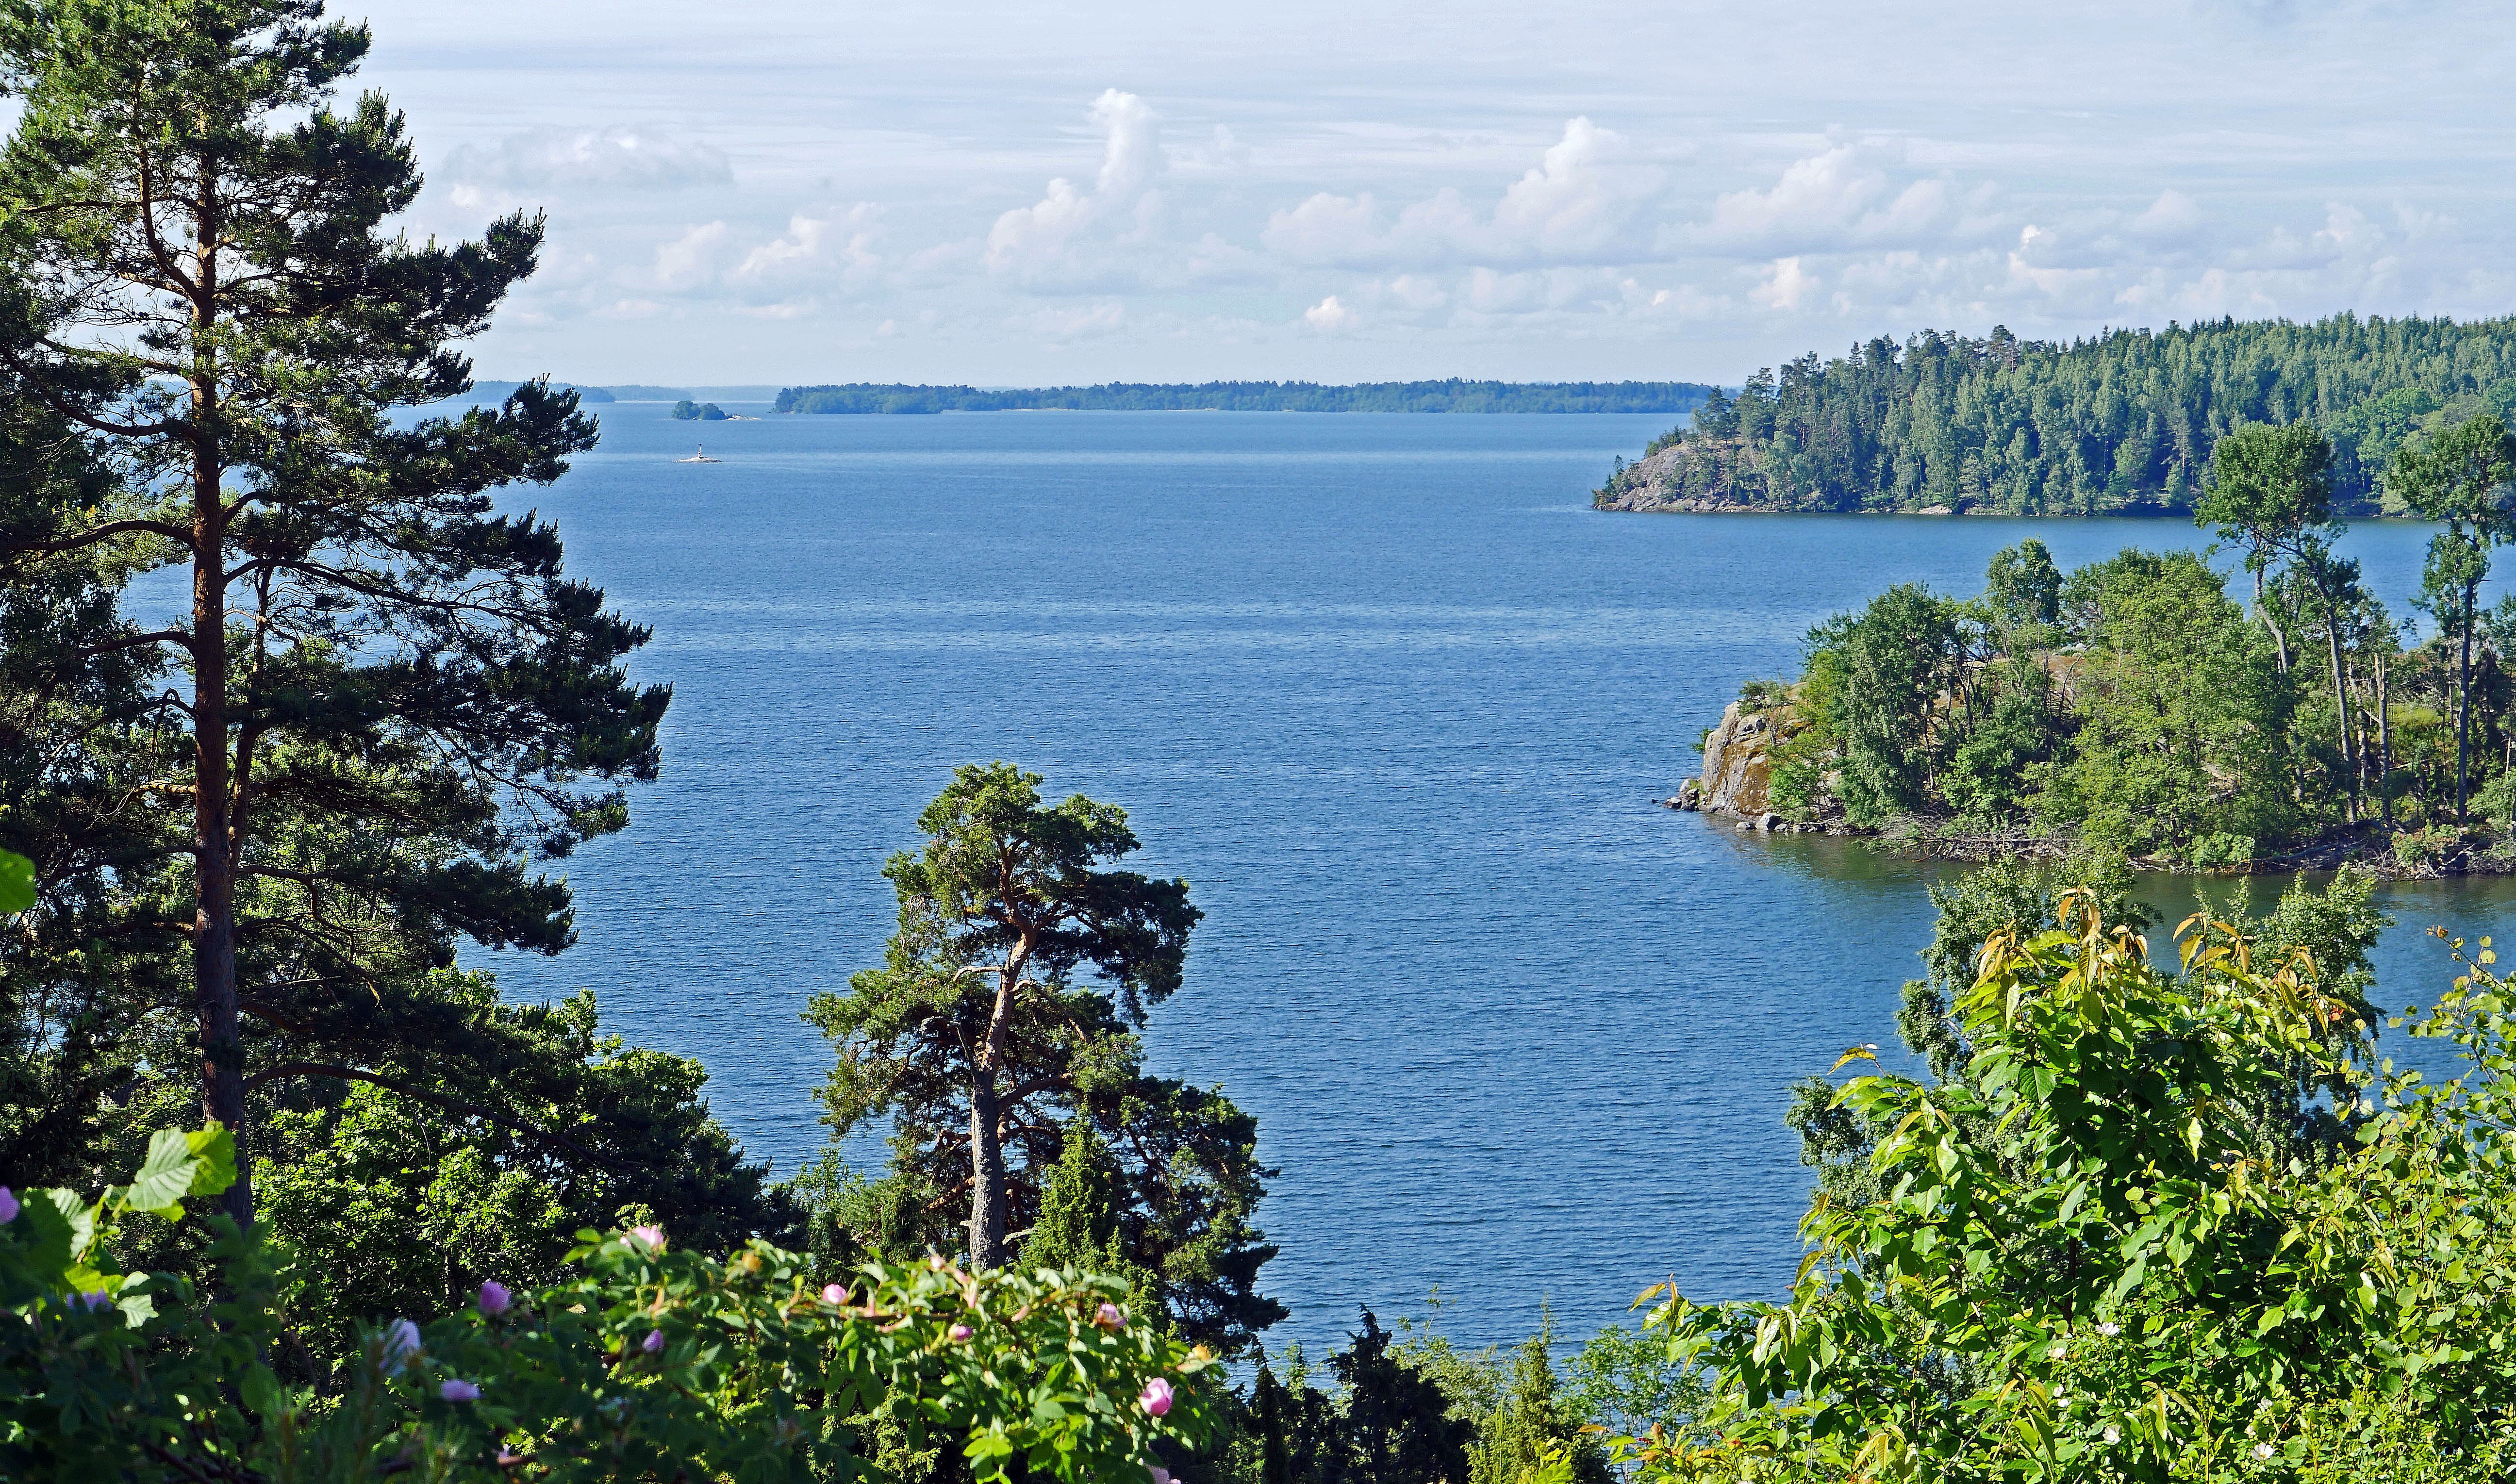 Spectacular Scandinavia & its Fjords - Lake Mälaren, Sigtuna, Sweden